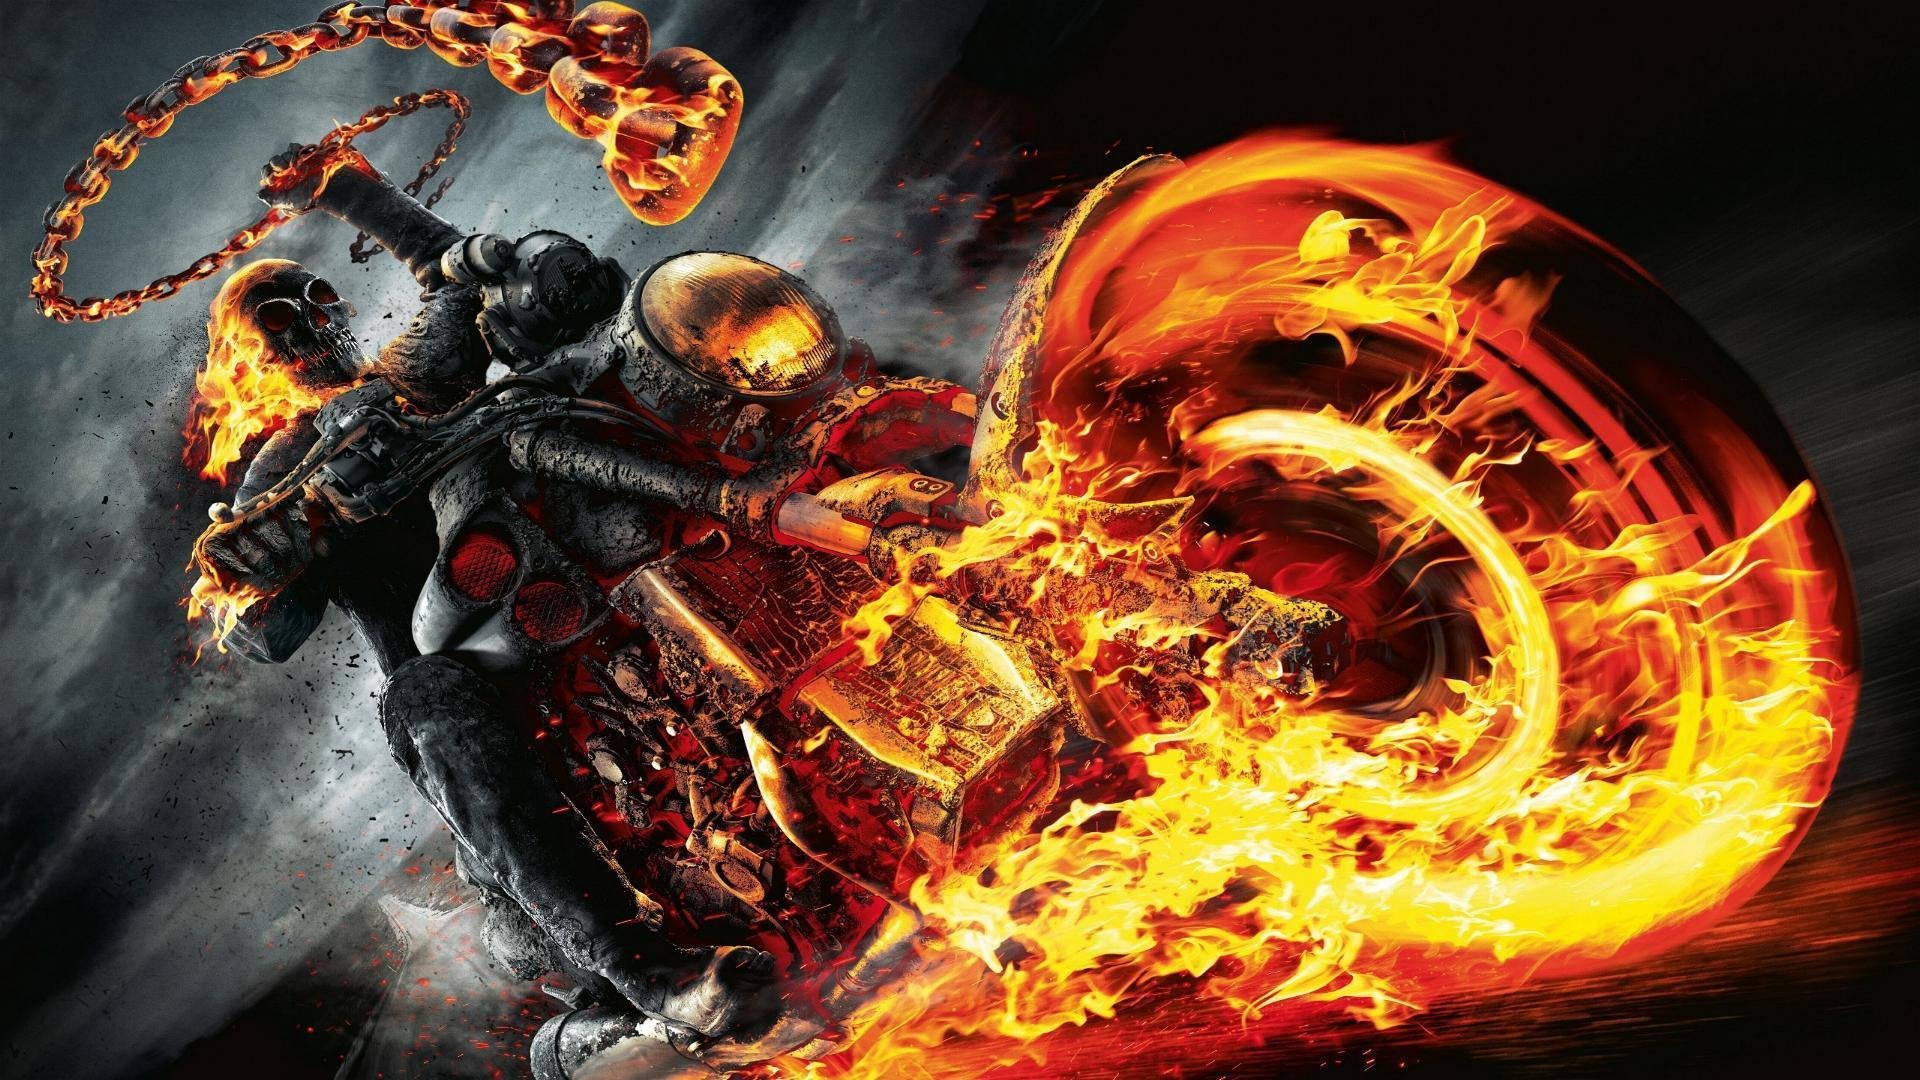 მრბოლელი მოჩვენება 2 / Ghost Rider: Spirit of Vengeance (Mrboleli Mochveneba 2 Qartulad) ქართულად